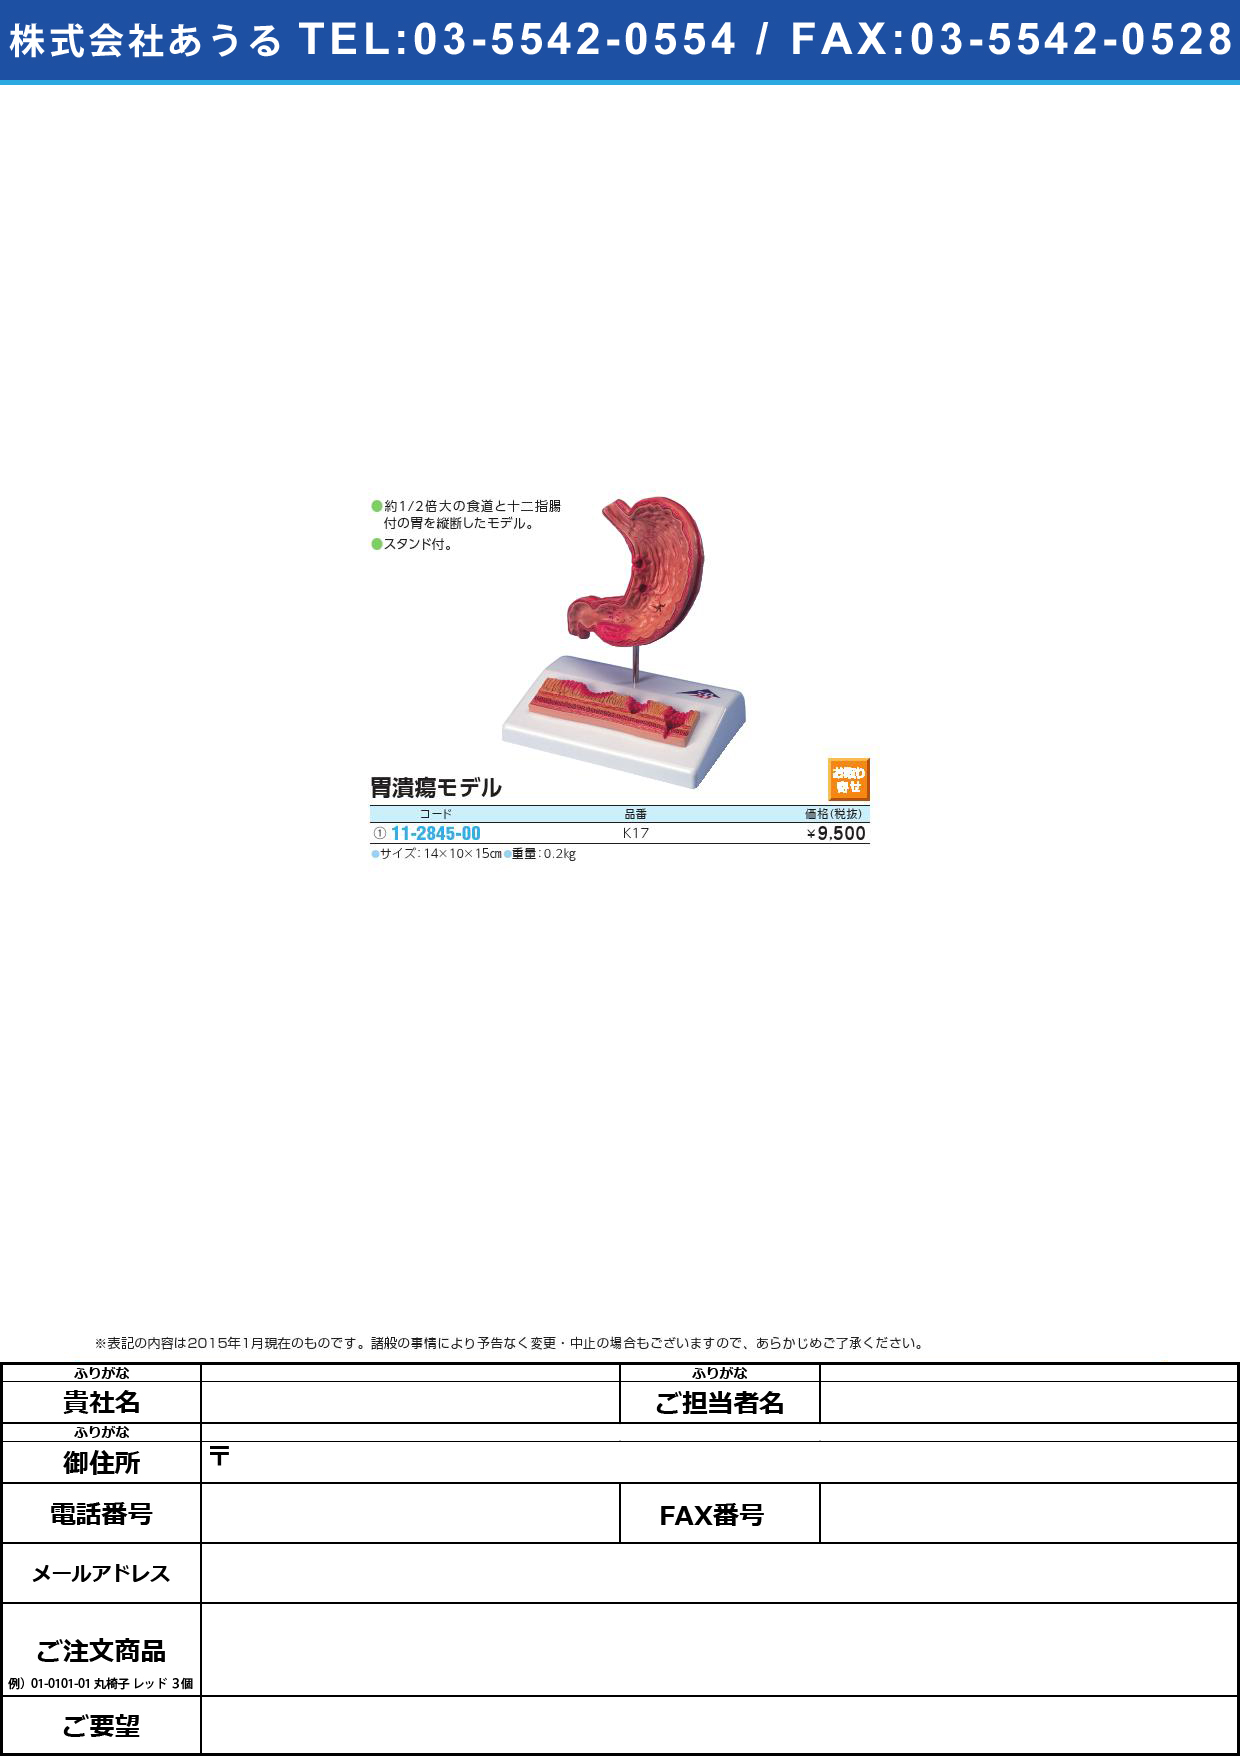 (11-2845-00)胃潰瘍モデル ｲｶｲﾖｳﾓﾃﾞﾙ(11-2845-00)K17【1台単位】【2015年カタログ商品】